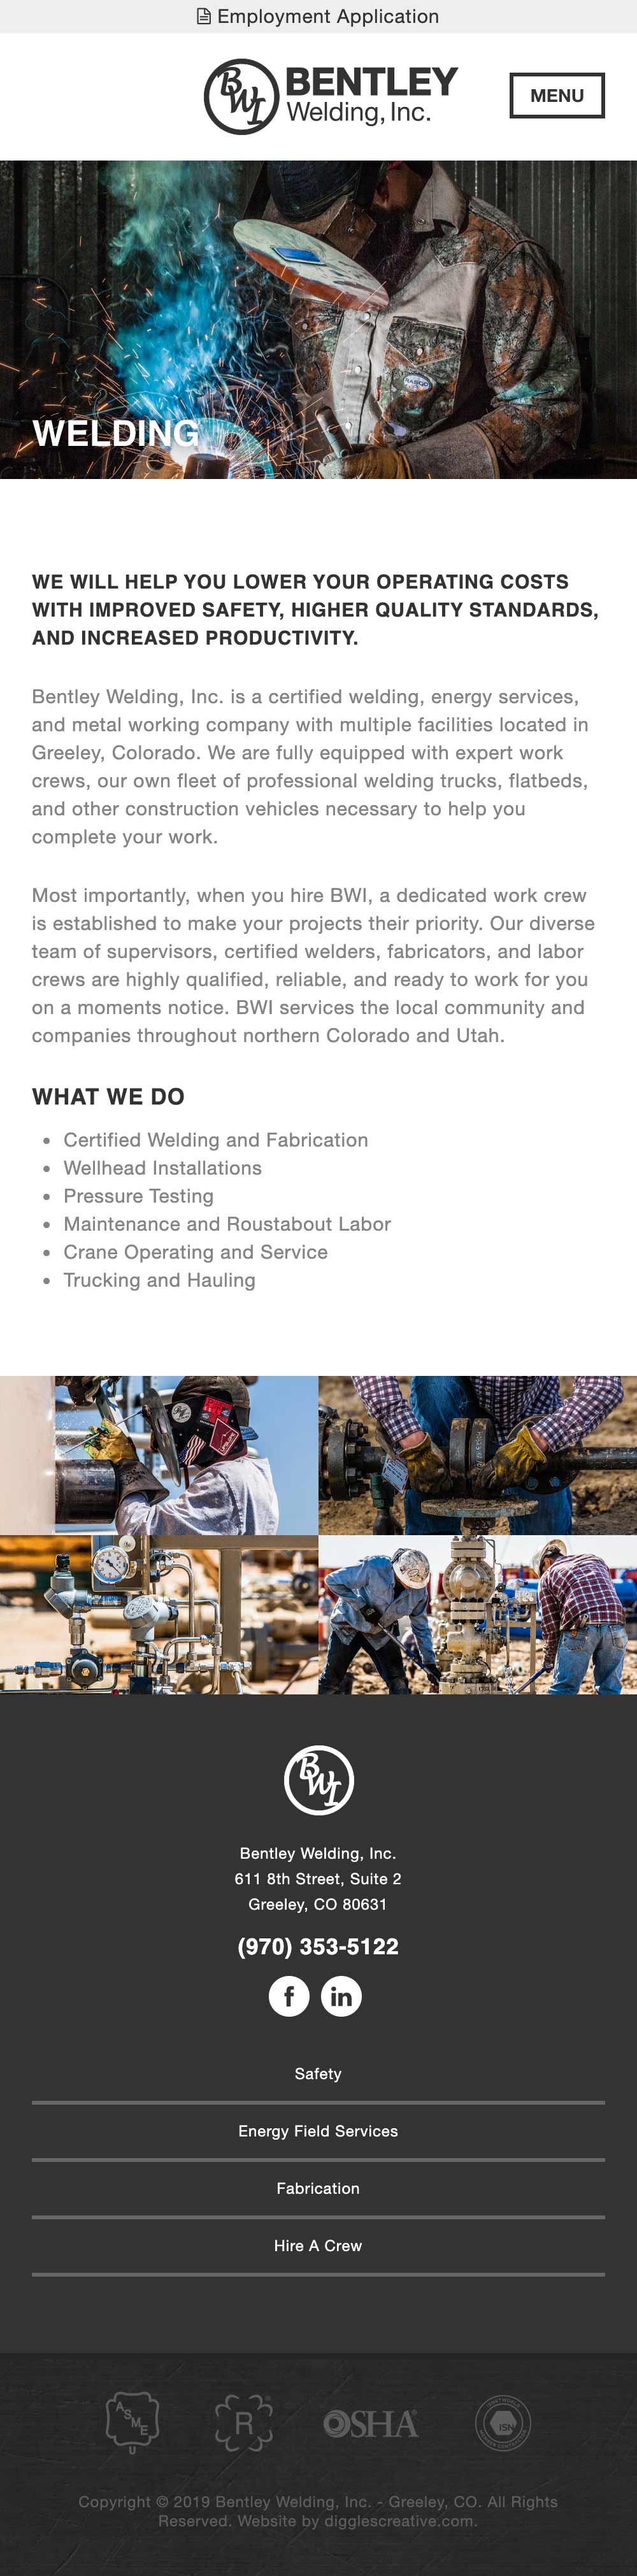 Bentley Welding Inc. - Industrial Website Design